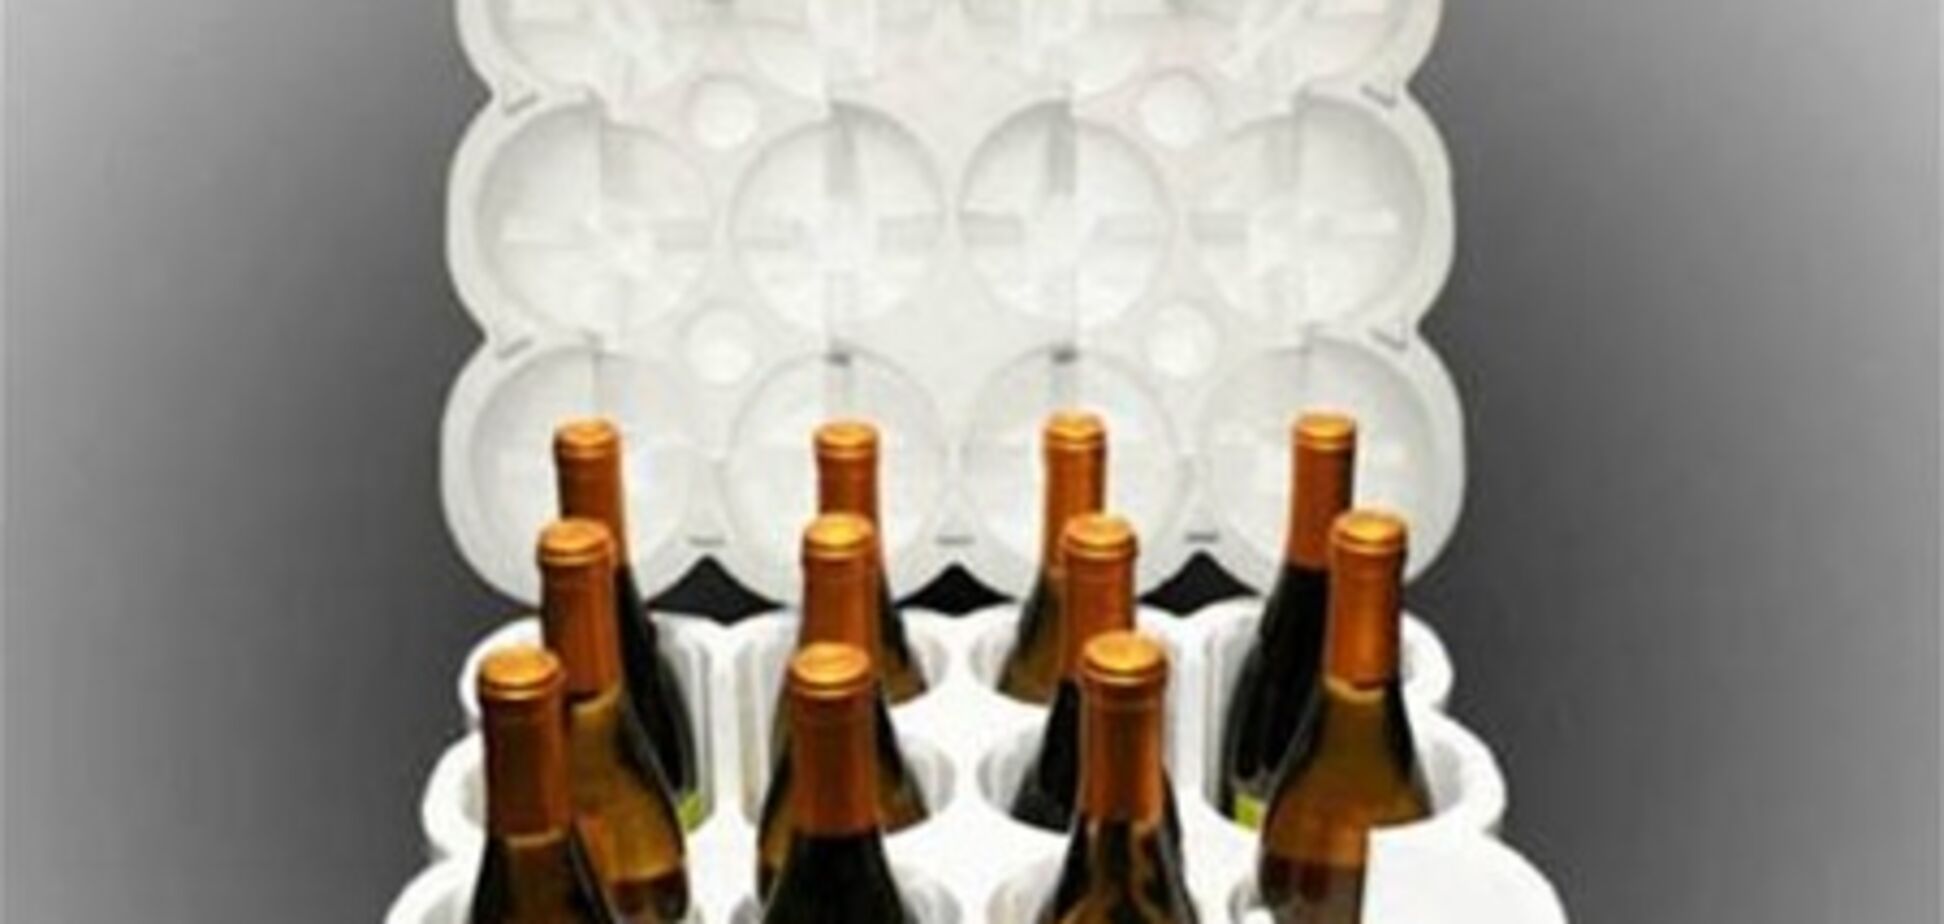 Вино не перегревается при транспортировке в жару благодаря инновационной упаковке